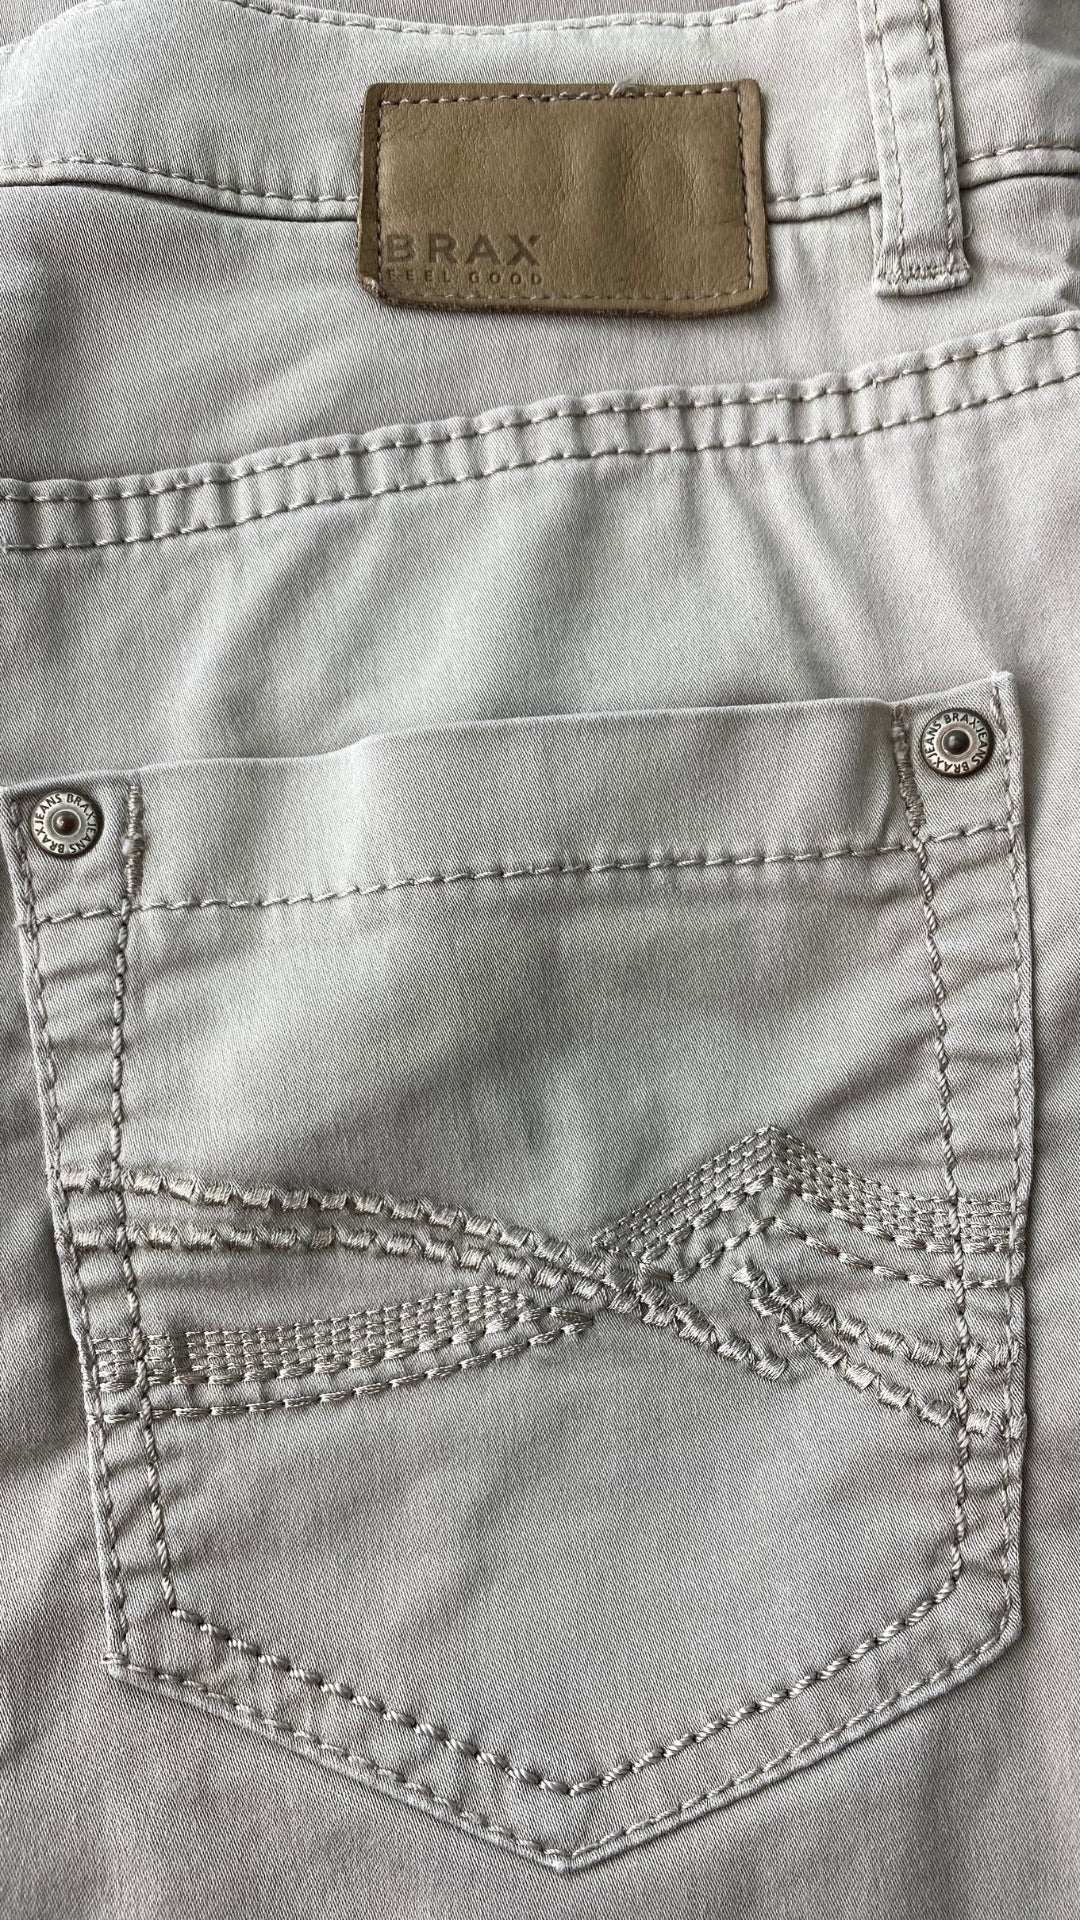 Pantalon taupe coupe droite, marque Brax, taille 27. Vue de la poche arrière.